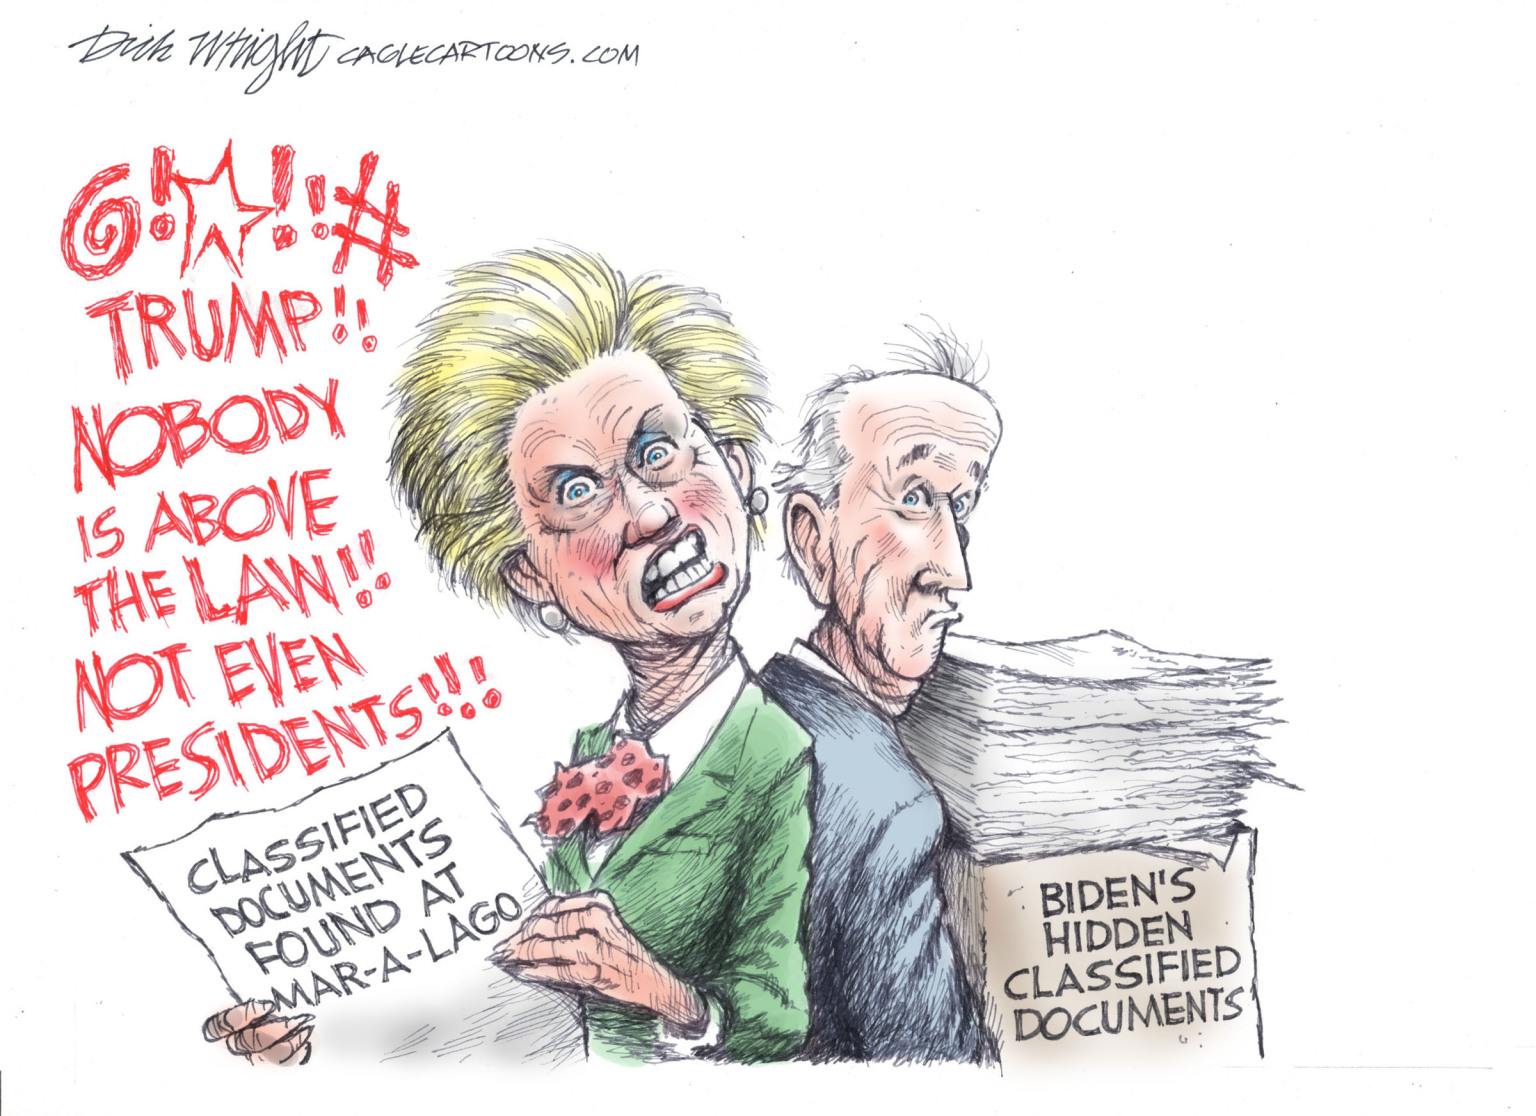 Biden's Hidden Documents - By Dick Wright